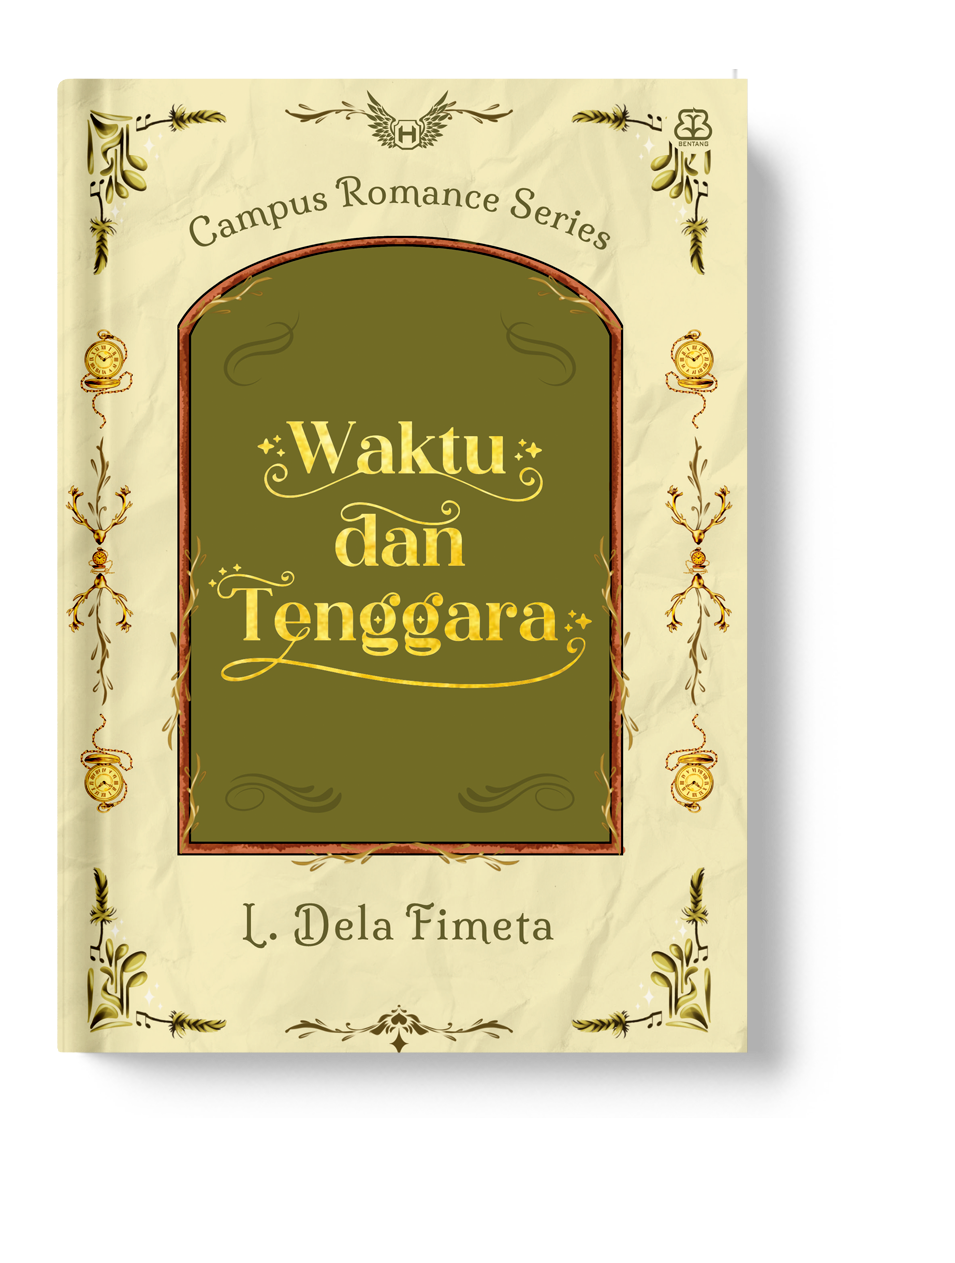 CAMPUS ROMANCE SERIES: WAKTU DAN TENGGARA